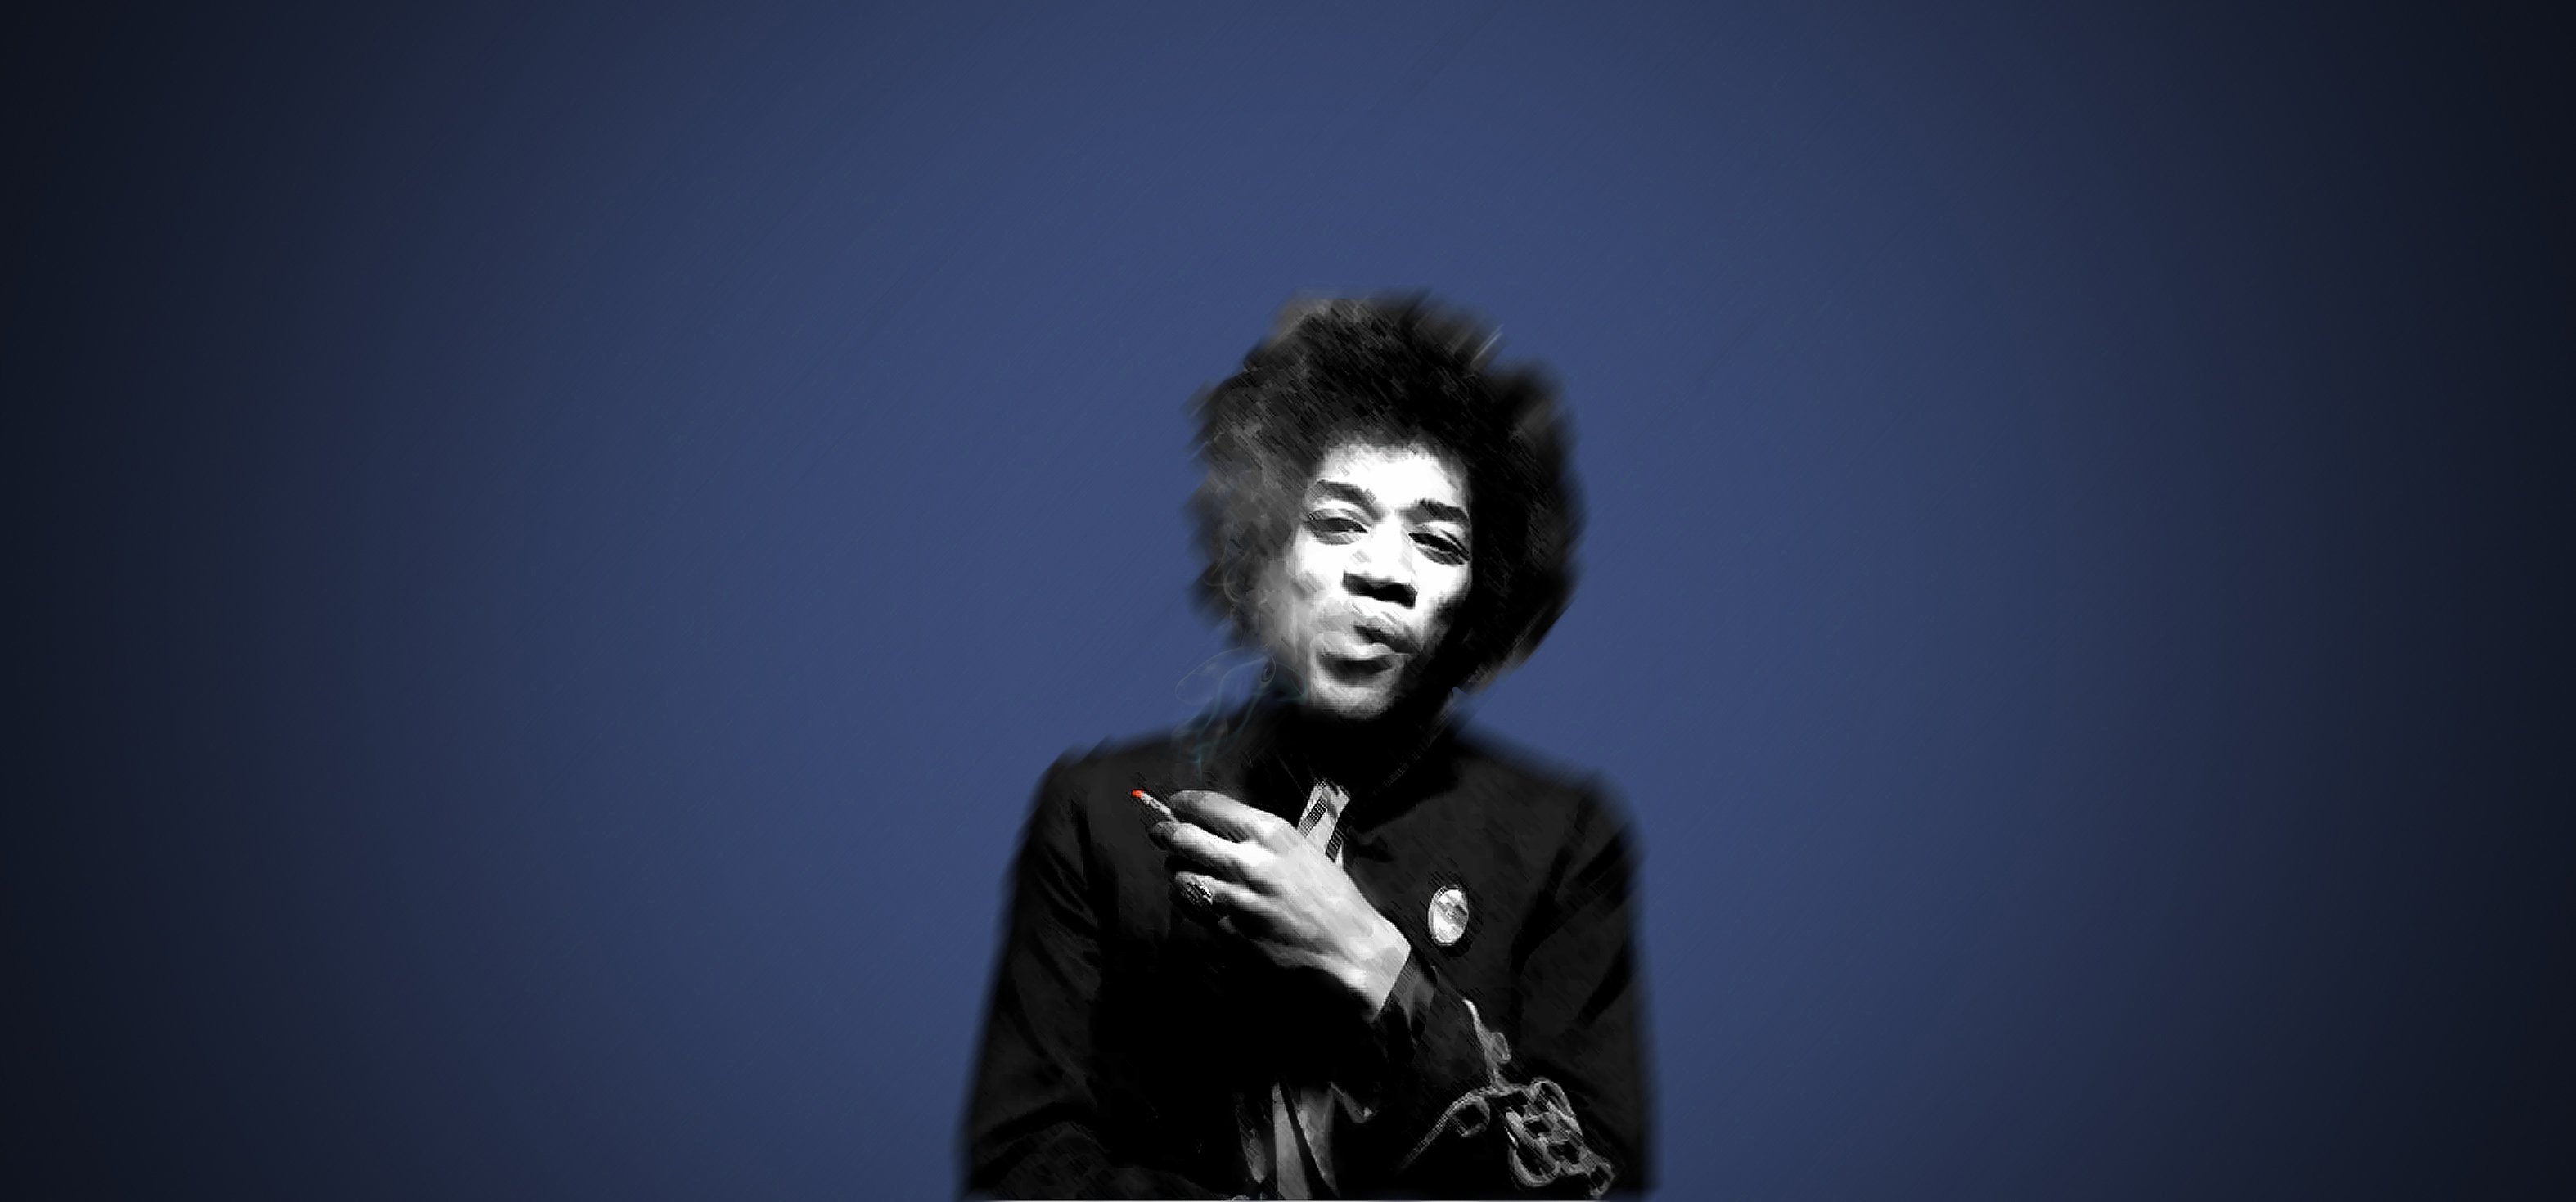 Jimi Hendrix HD Wallpaper Background Image 3148x1469 ID